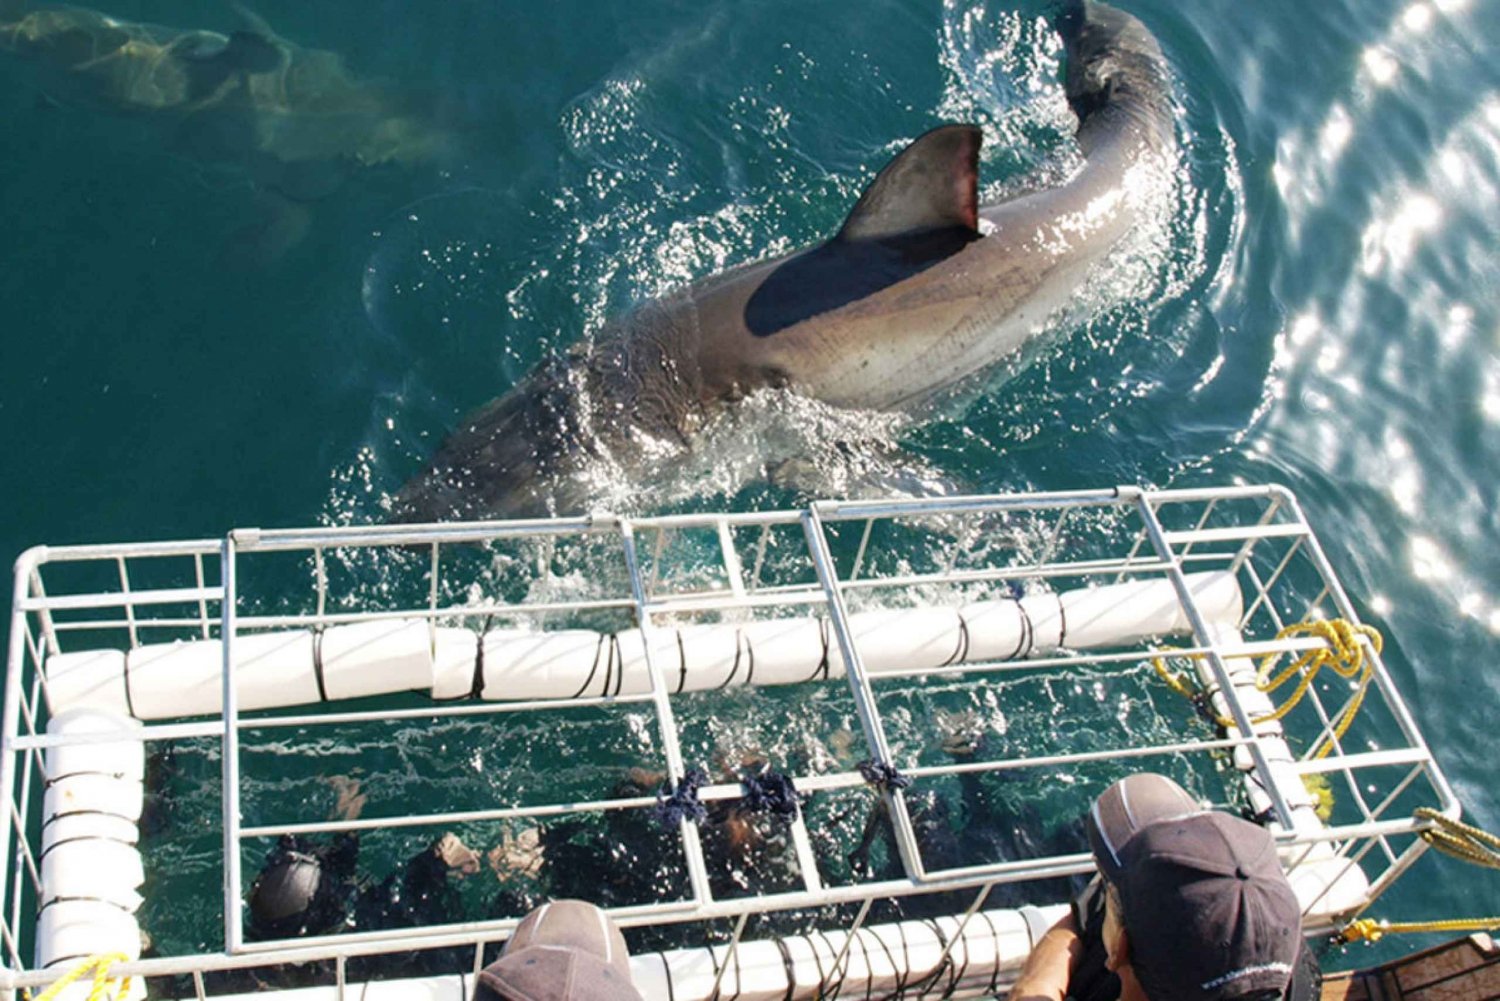 Gansbaai: Shark Dive & Whale Watching Combo Boat Trip